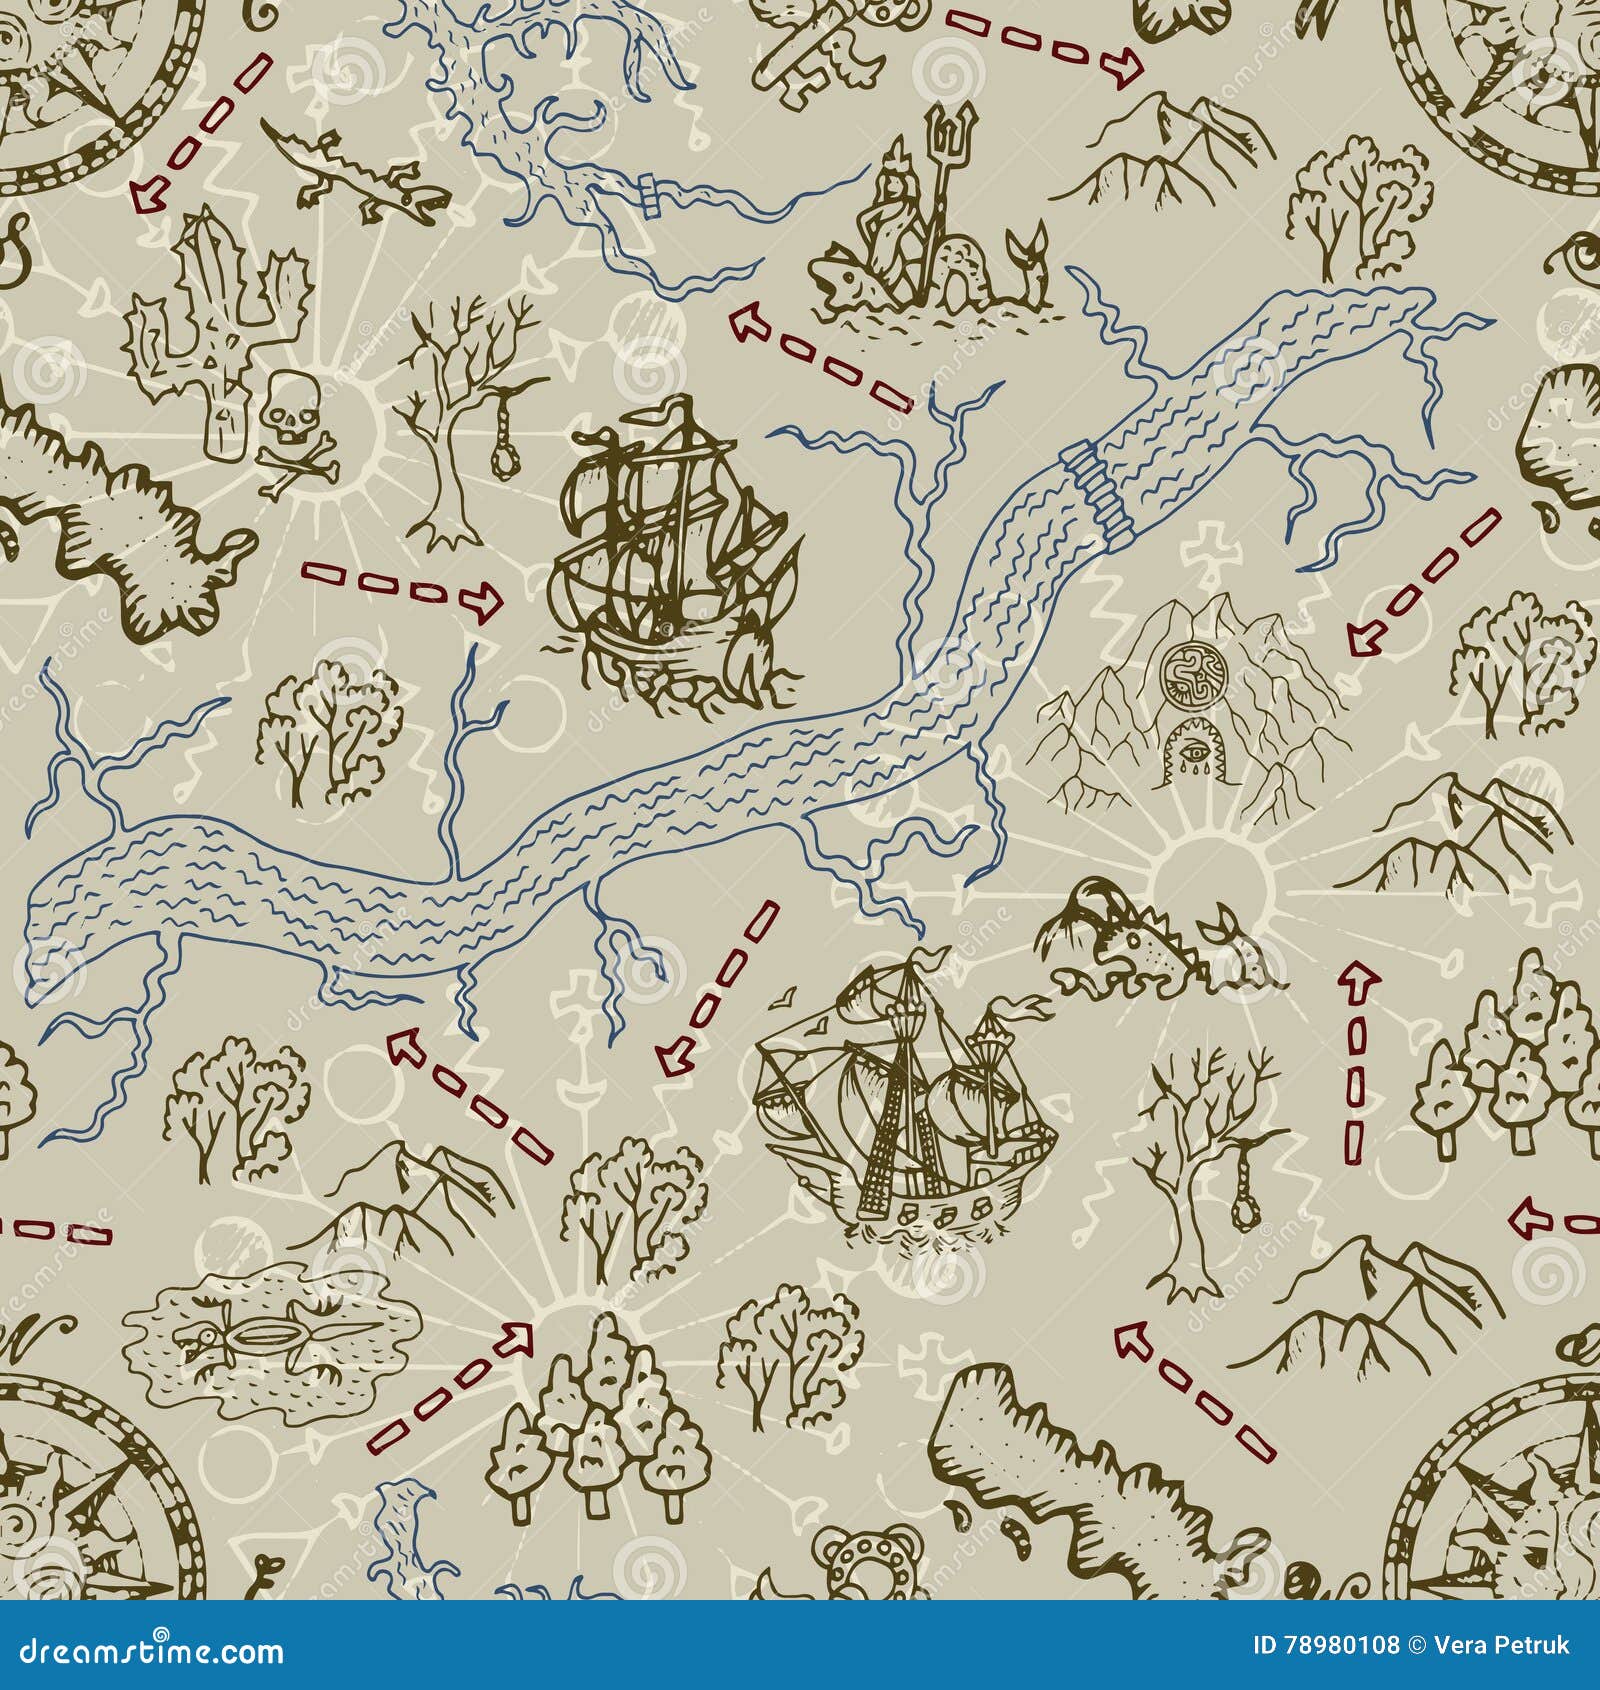 mapa de caça ao tesouro, ilustração vetorial em um fundo azul